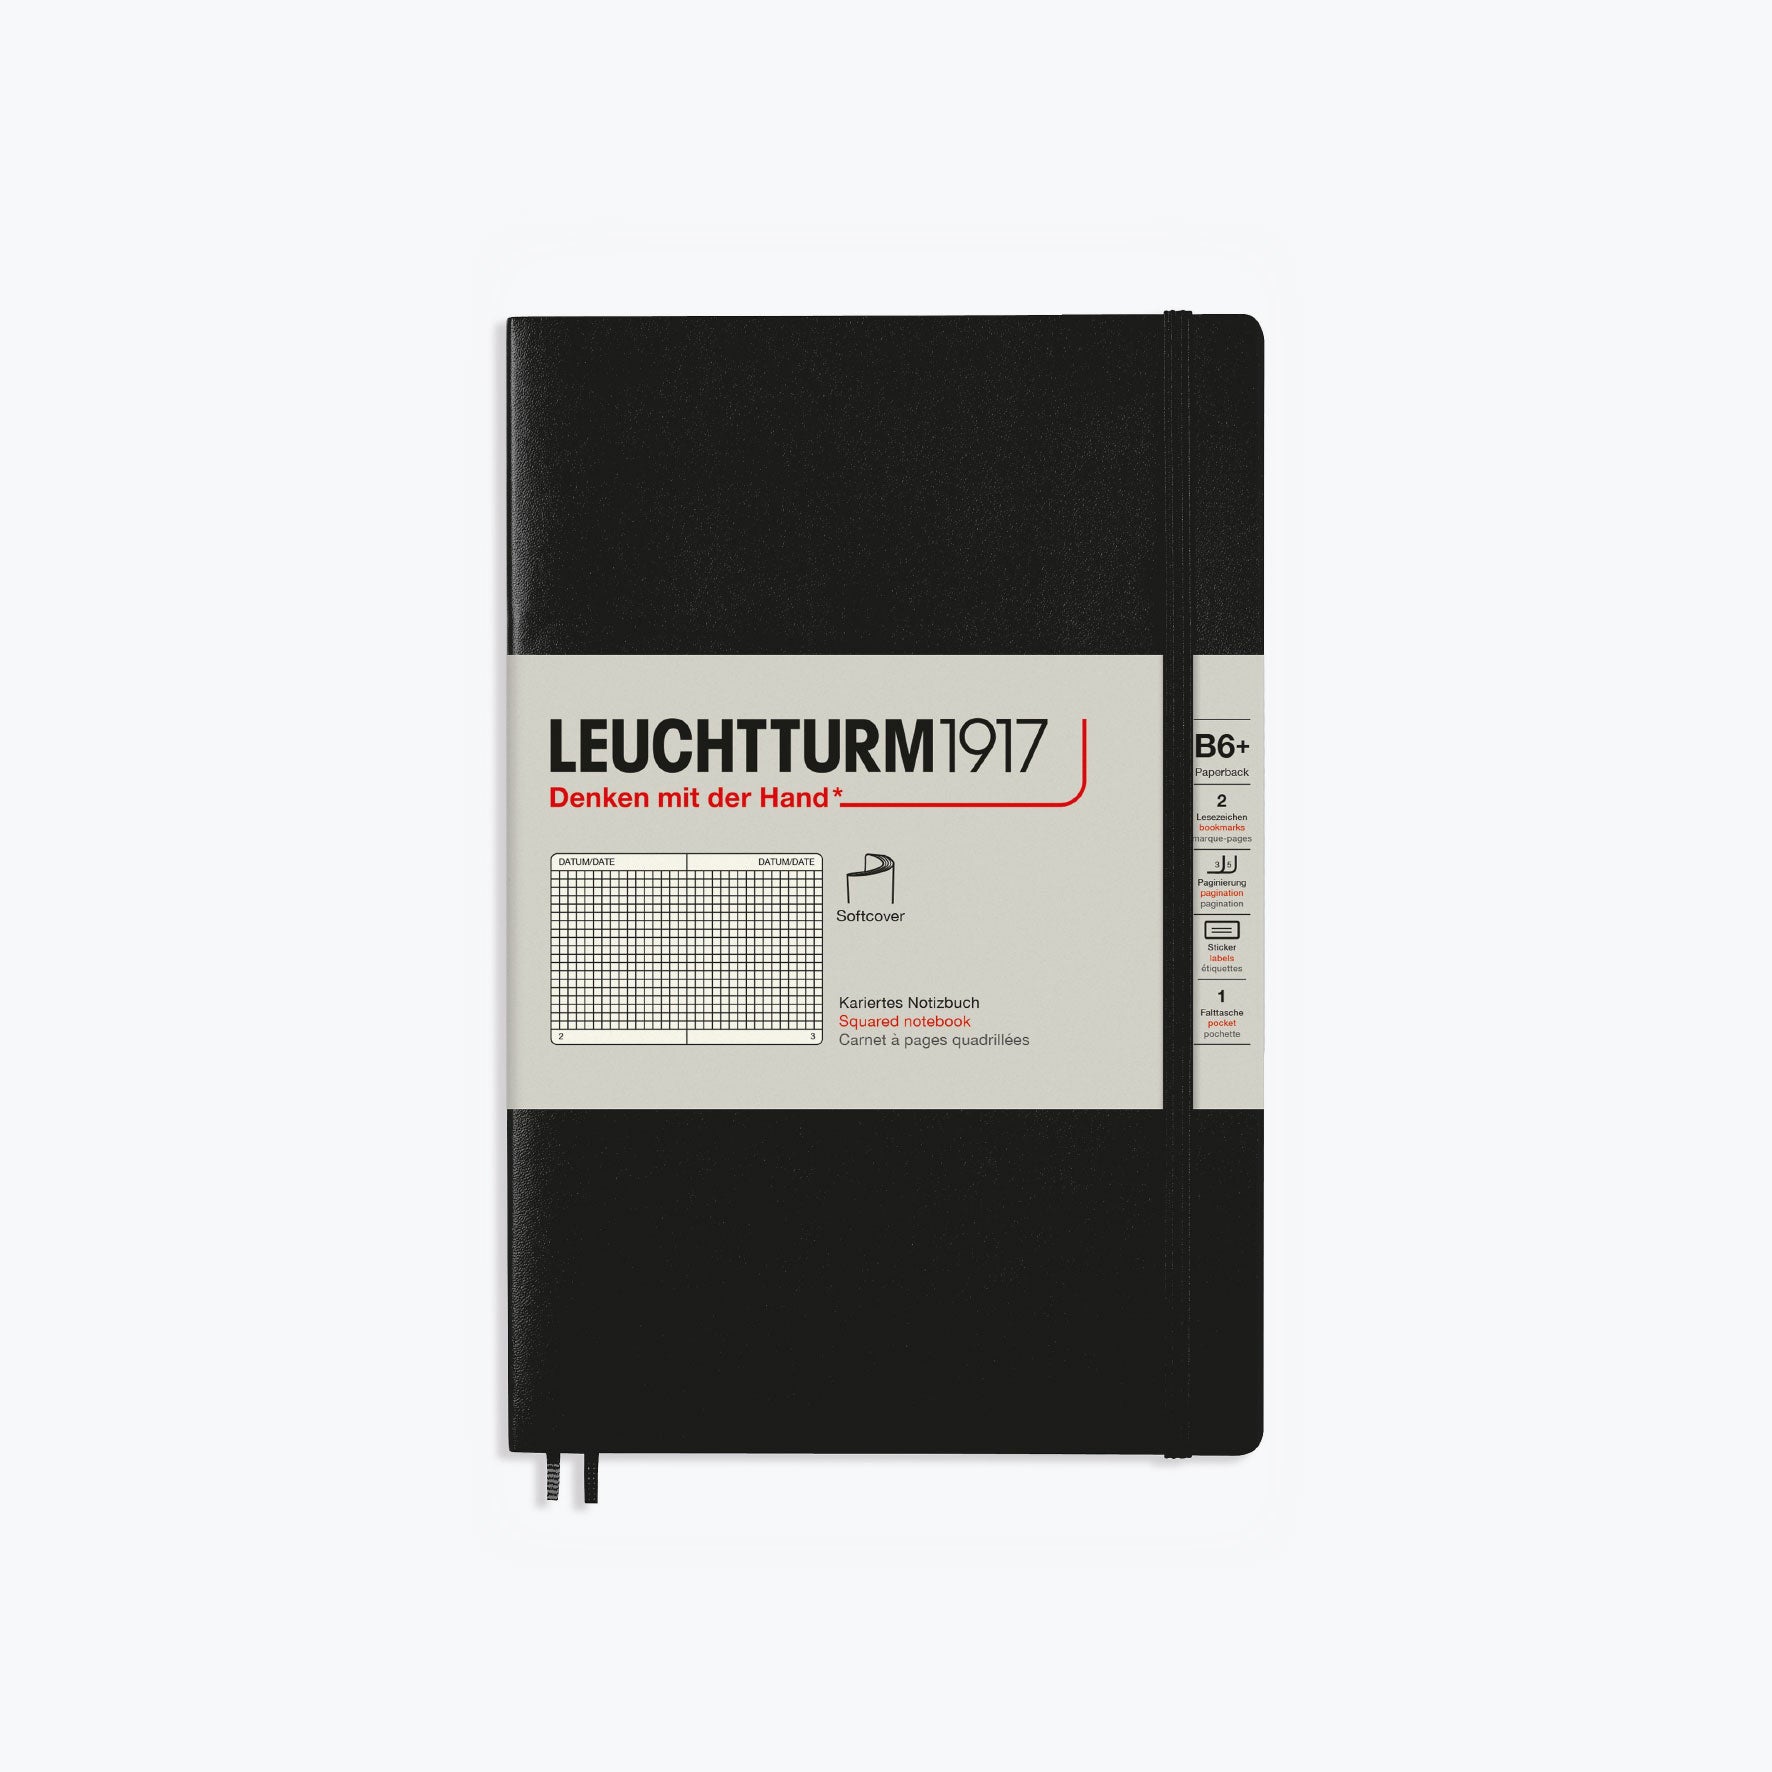 Leuchtturm1917 - Notebook - Softcover - B6+ - Black